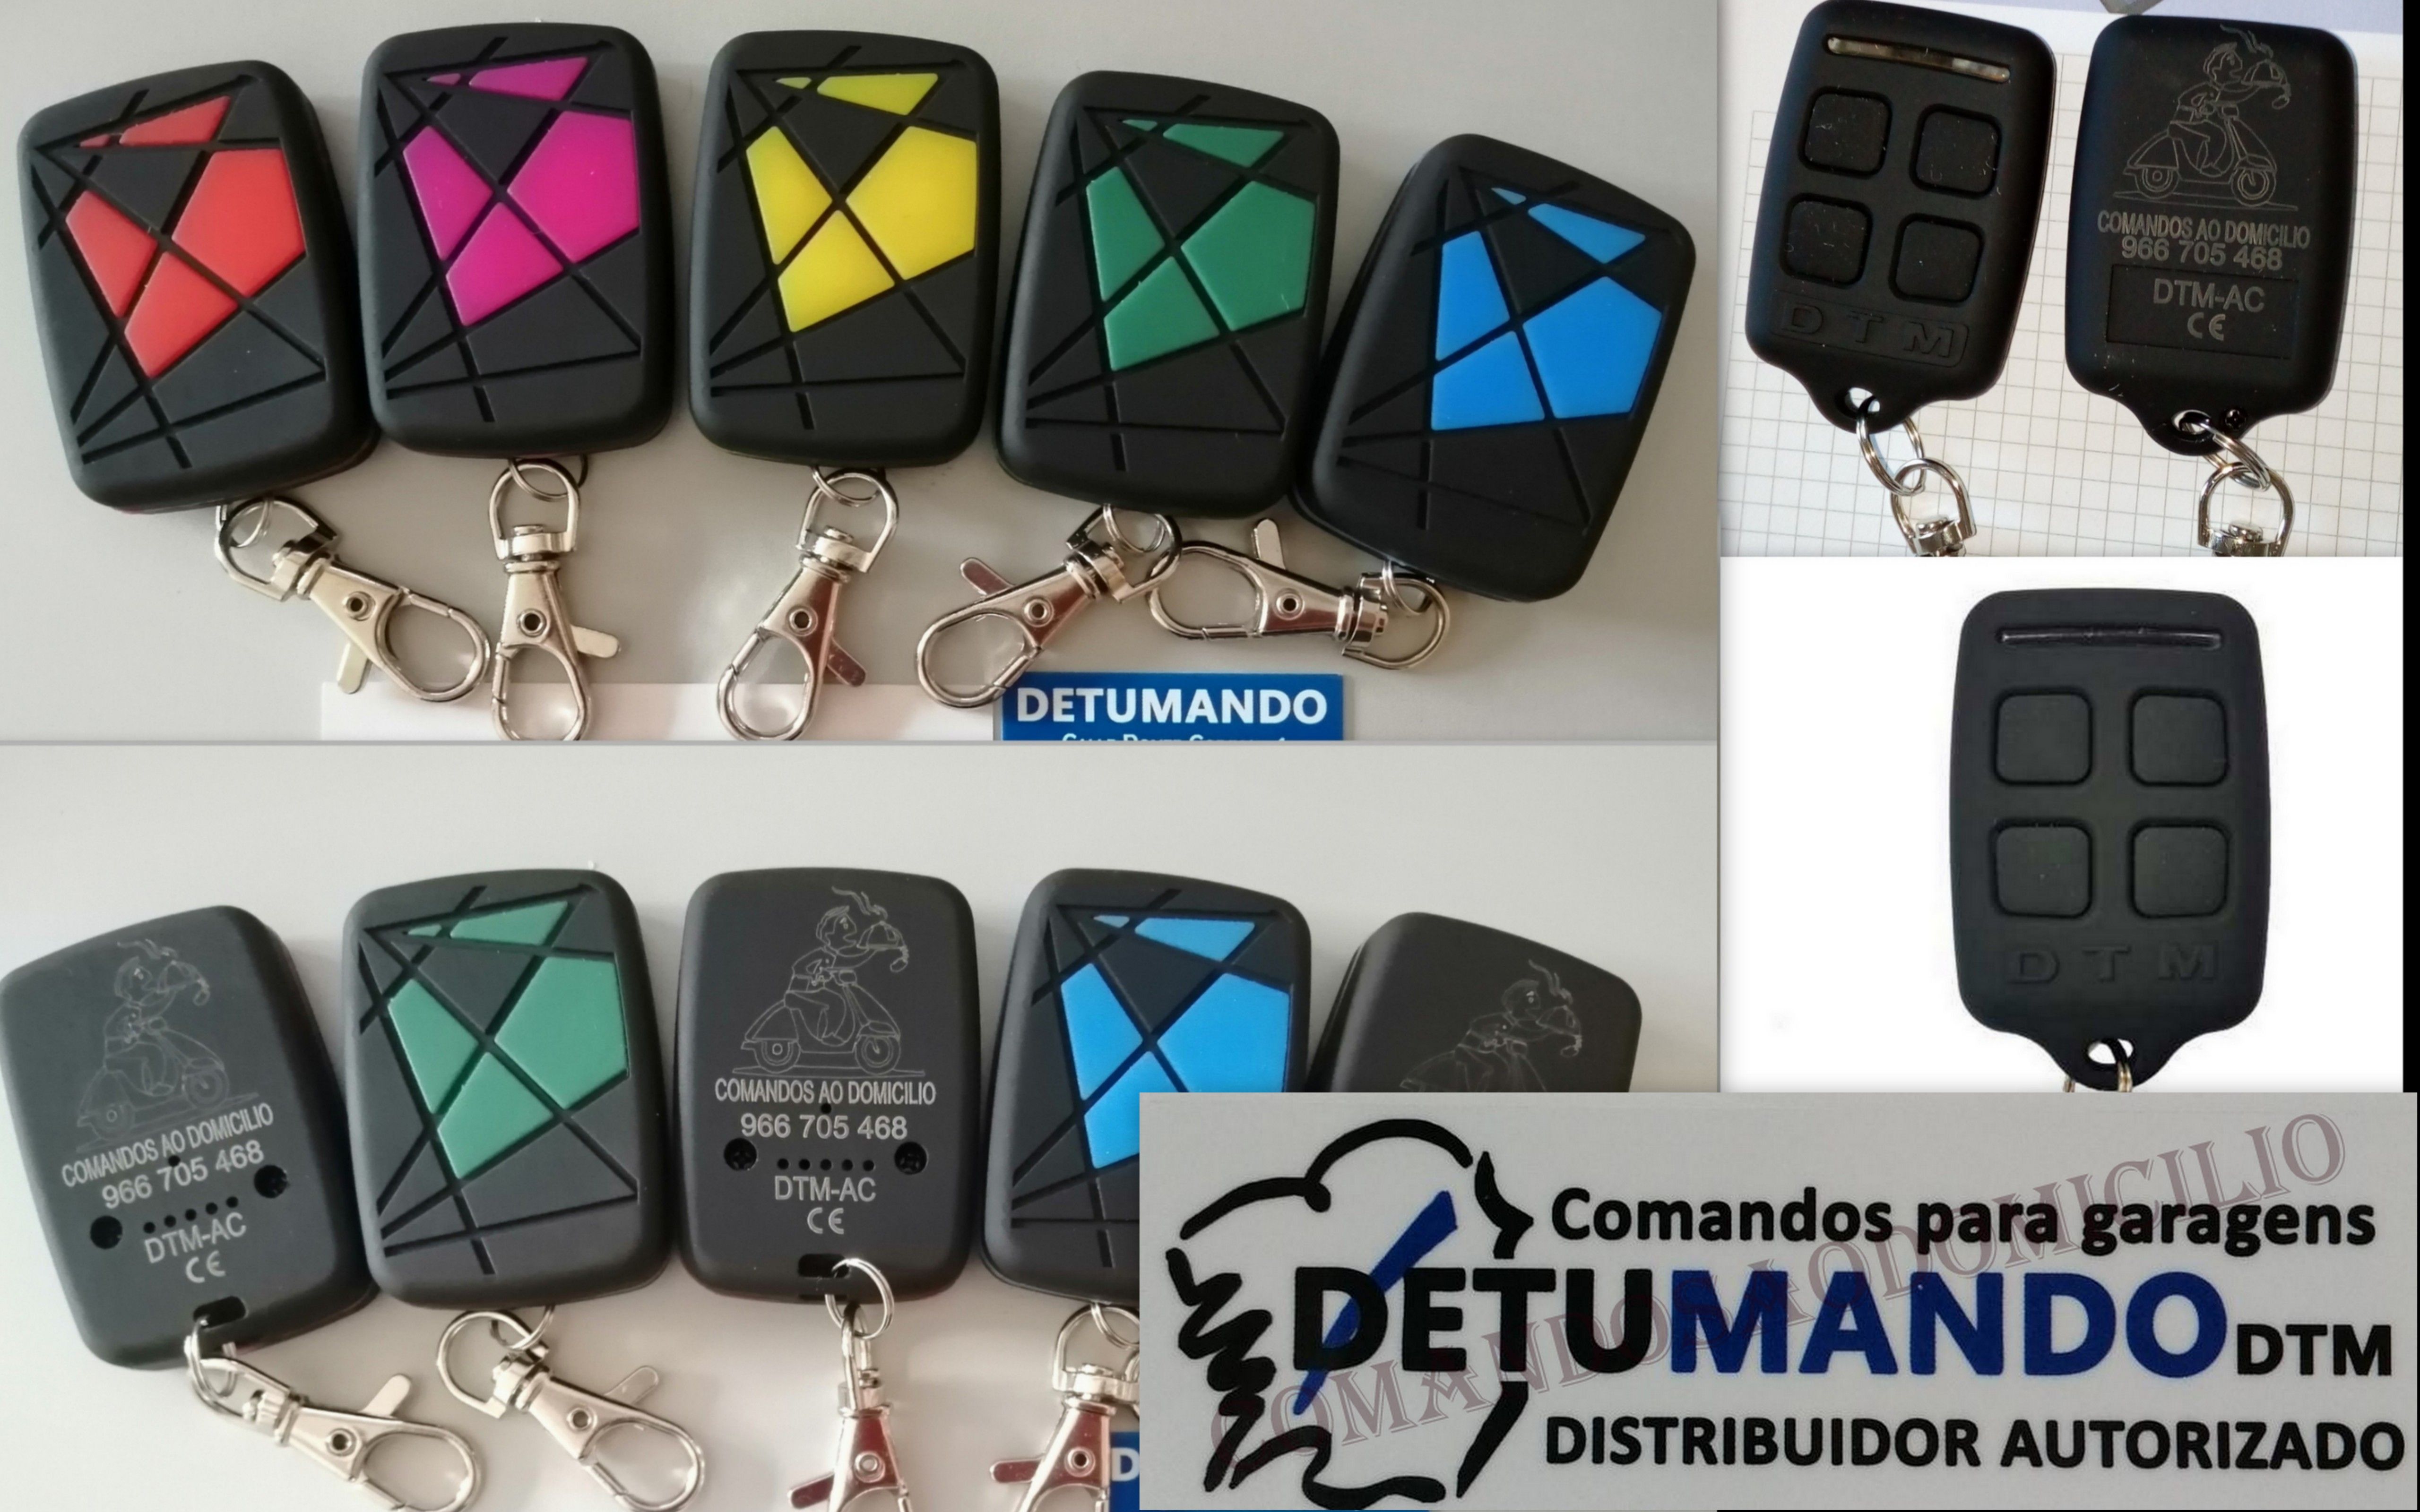 Comando de garagem - DTM compatível com MARANTEC